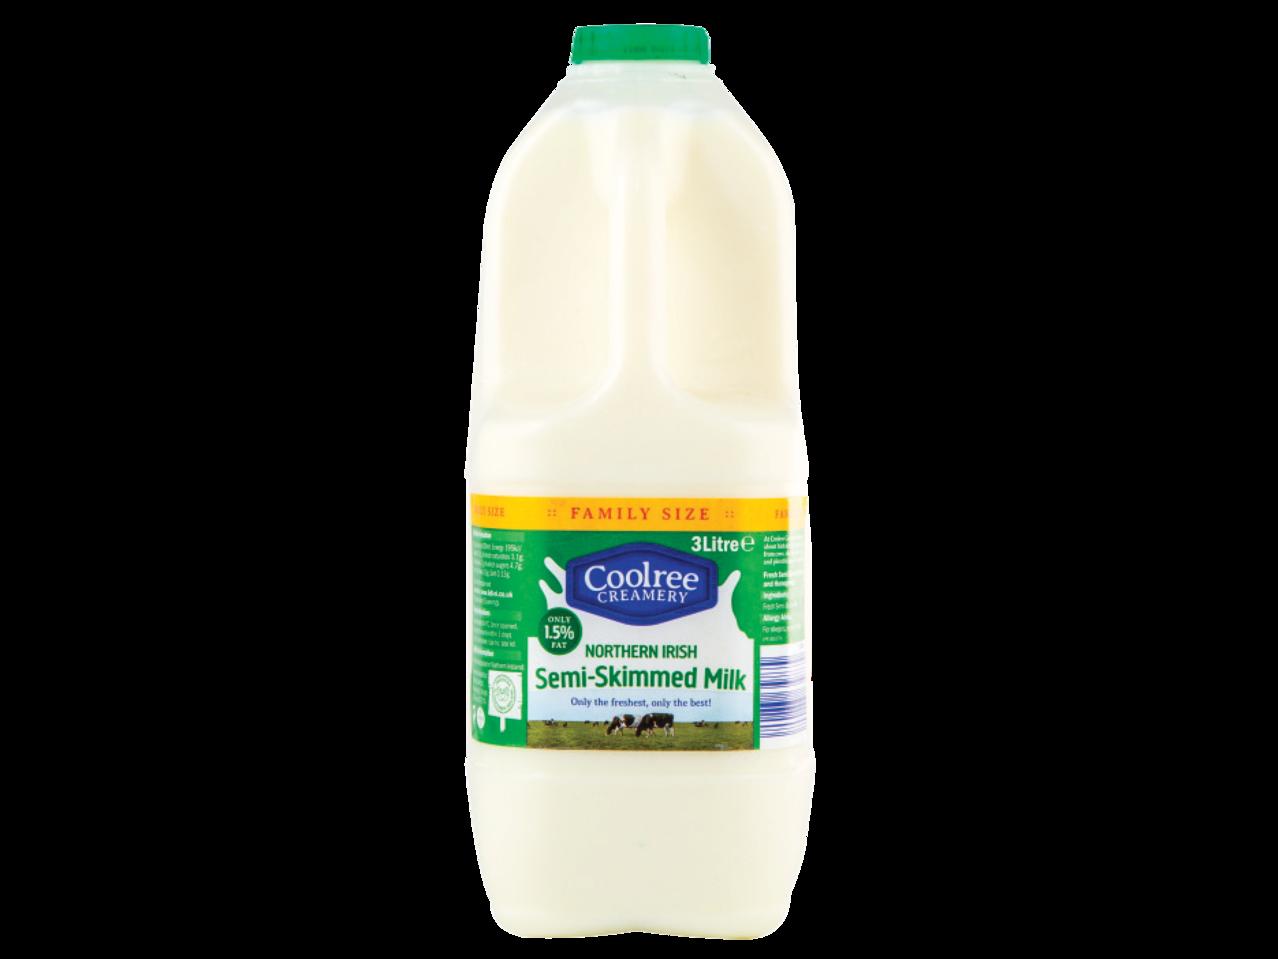 Northern Irish Semi-Skimmed Milk